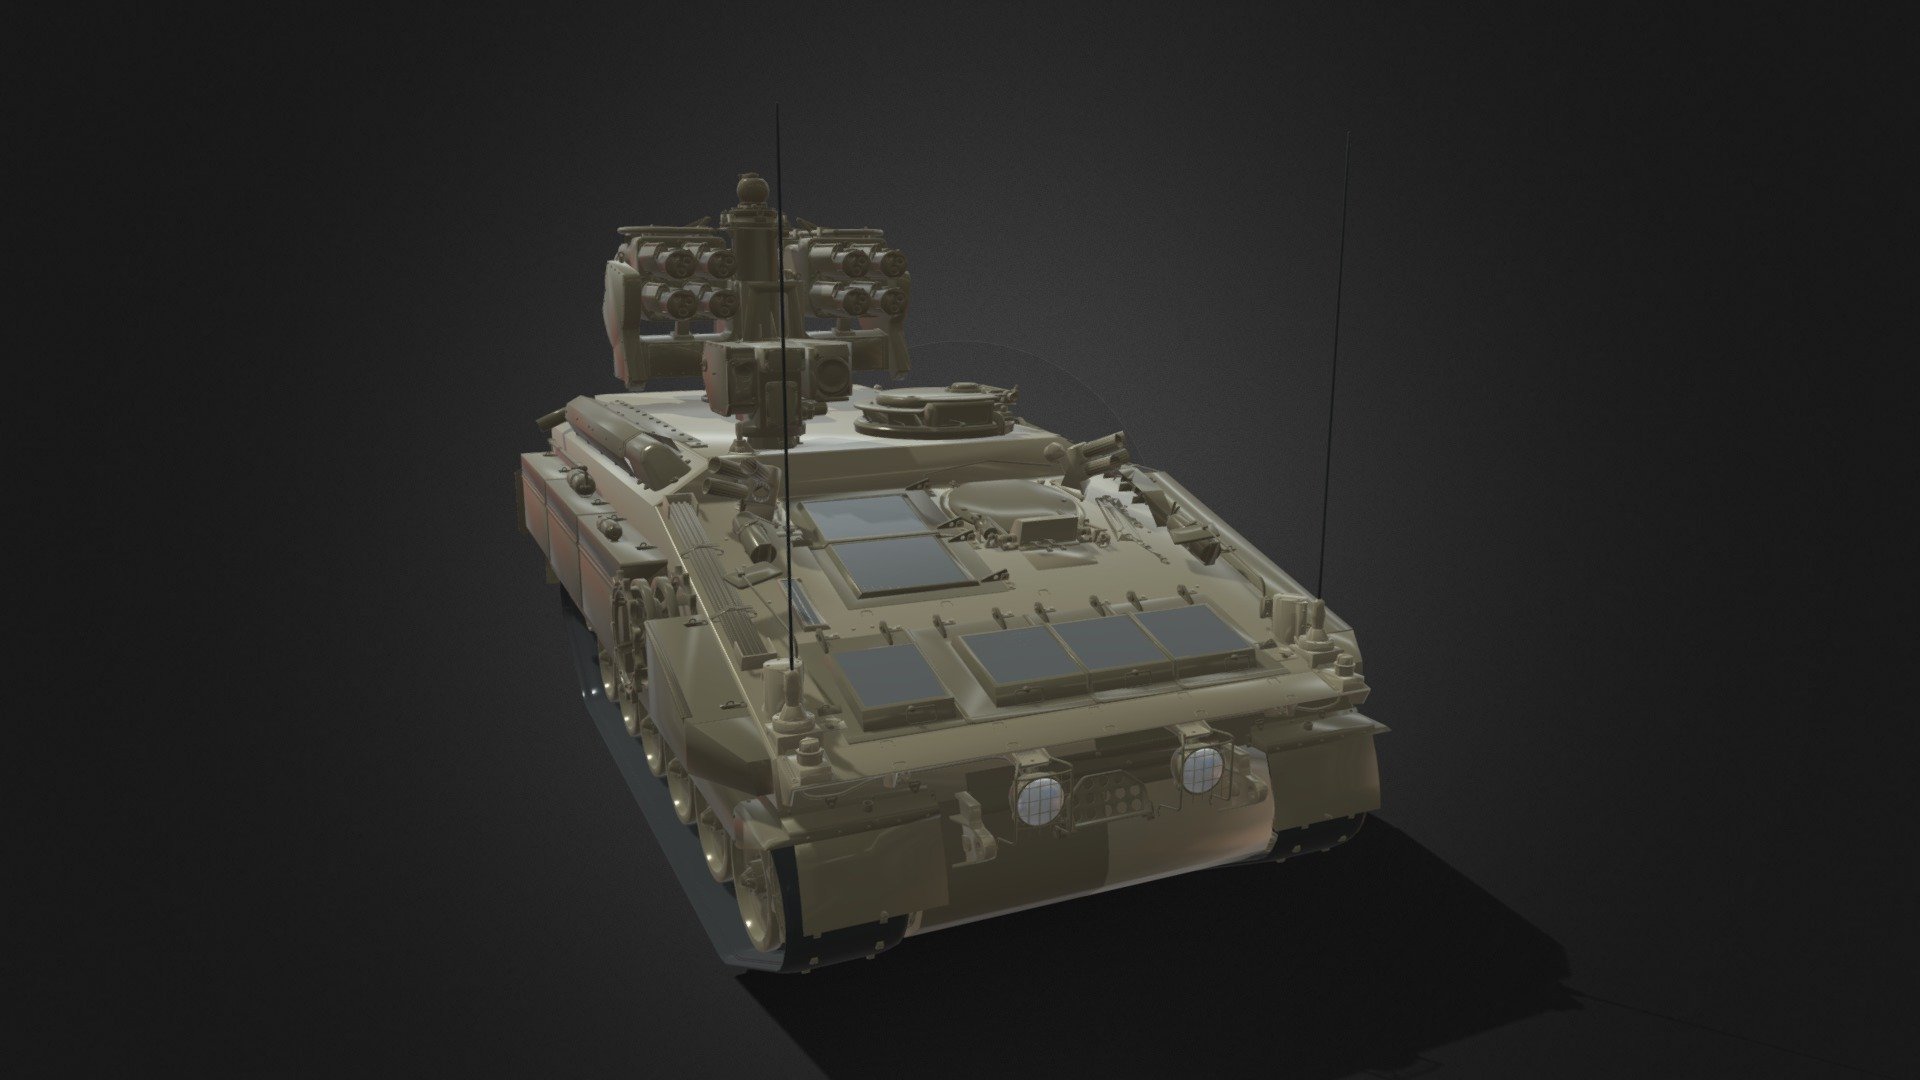 FV4333 Stormer HVM - 3D model by fantom2205 (@f2205) 3d model